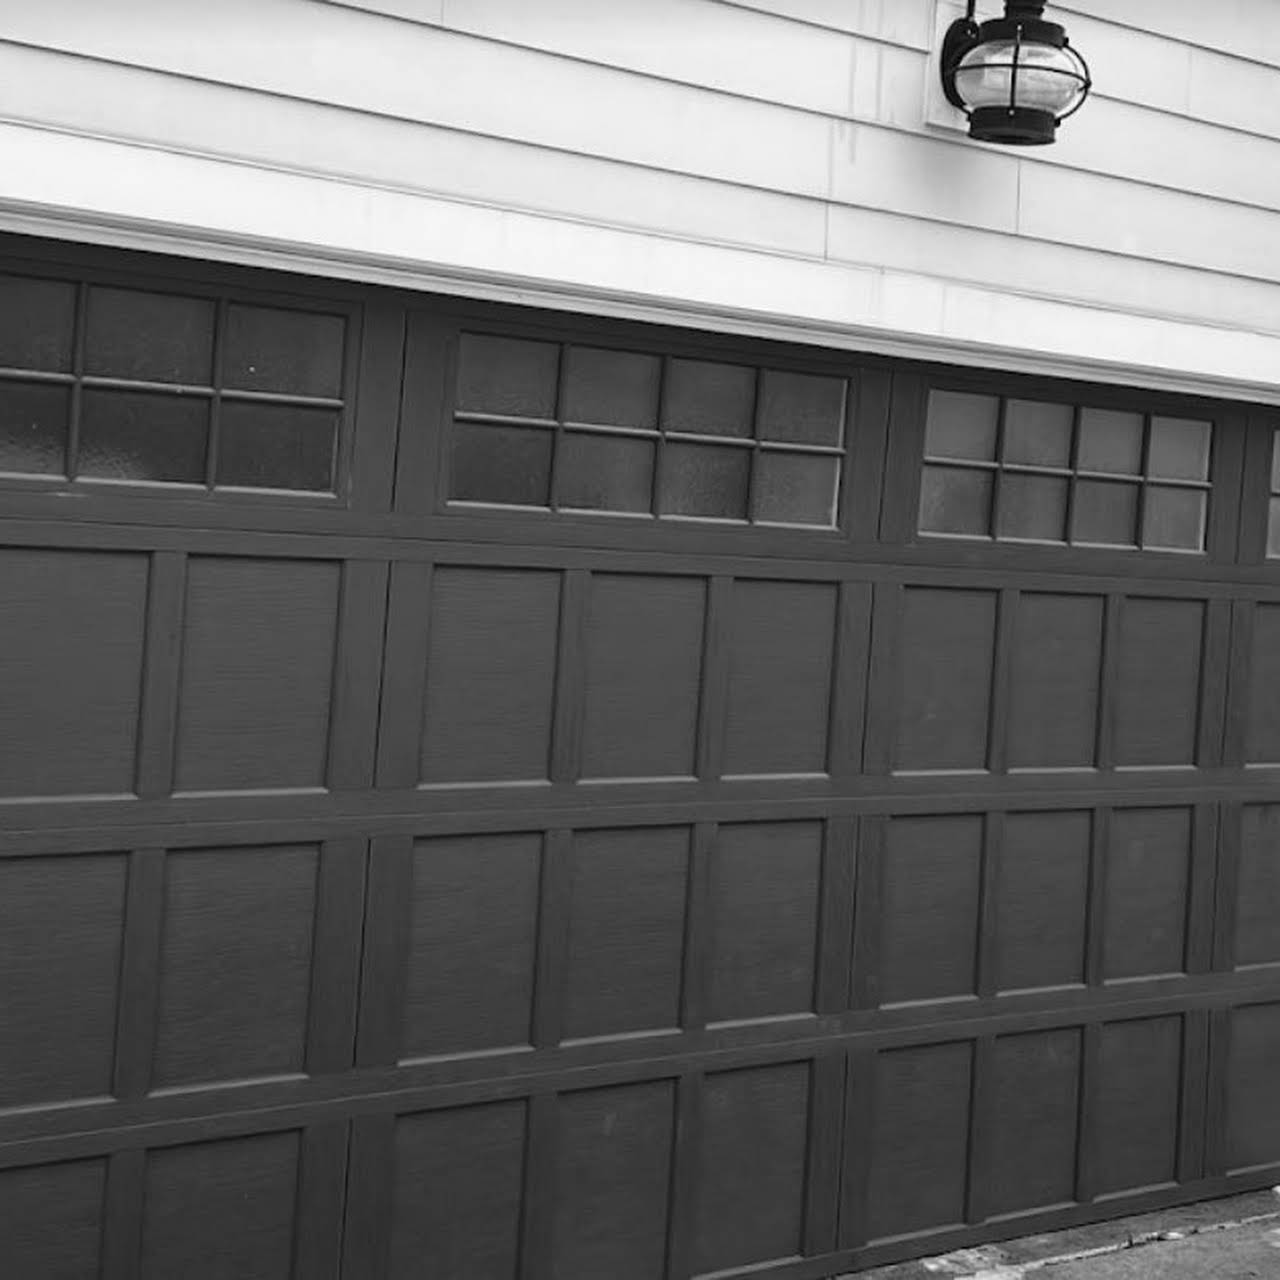 Expert Garage Door Repair LLC